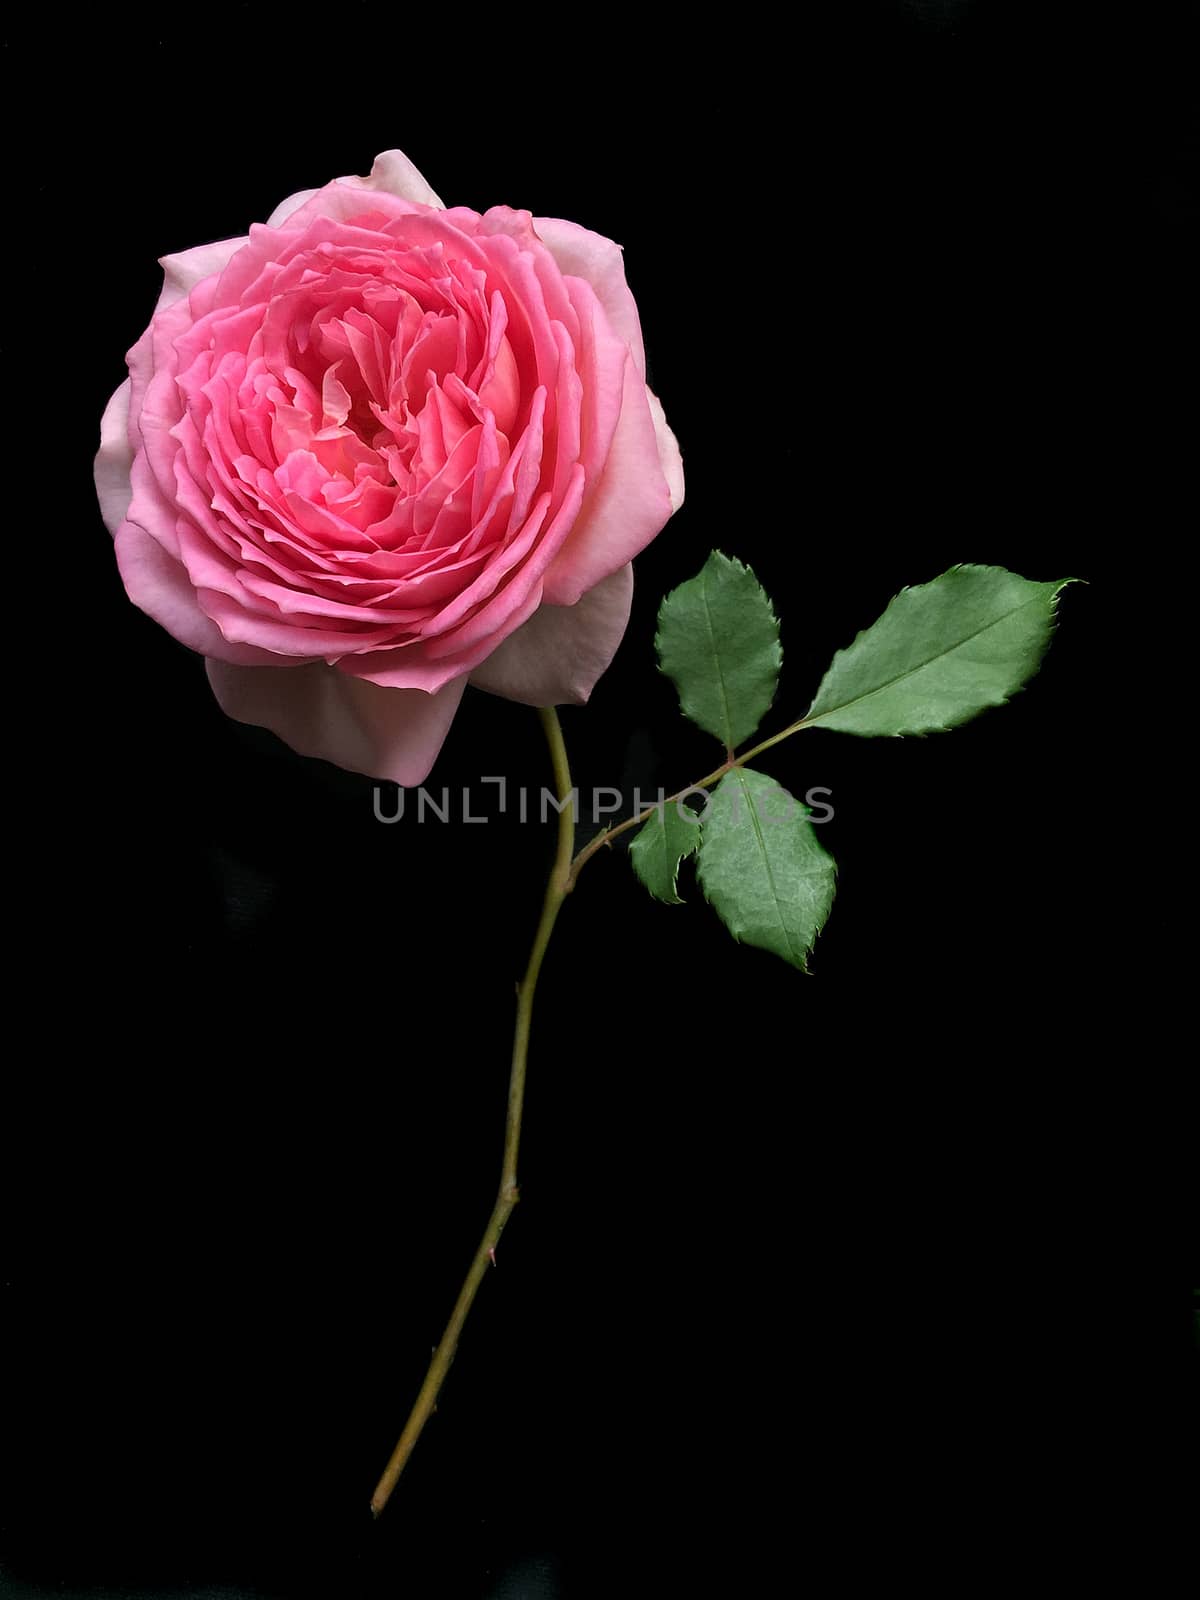 Beautiful English roses on black background by ohhlanla